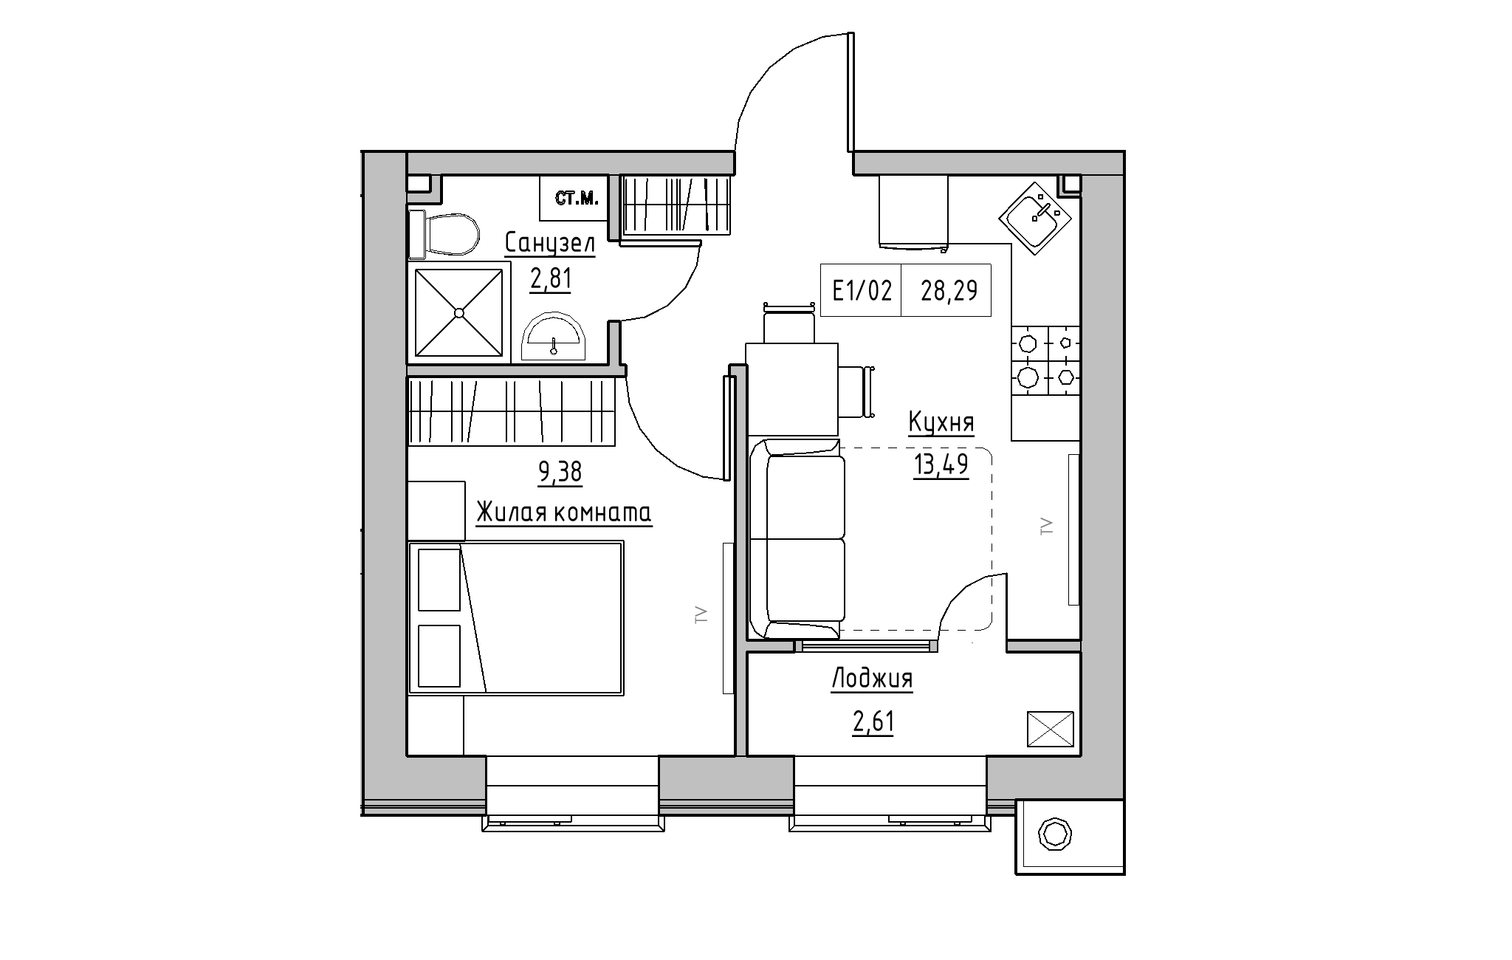 Планировка 1-к квартира площей 28.29м2, KS-013-05/0016.